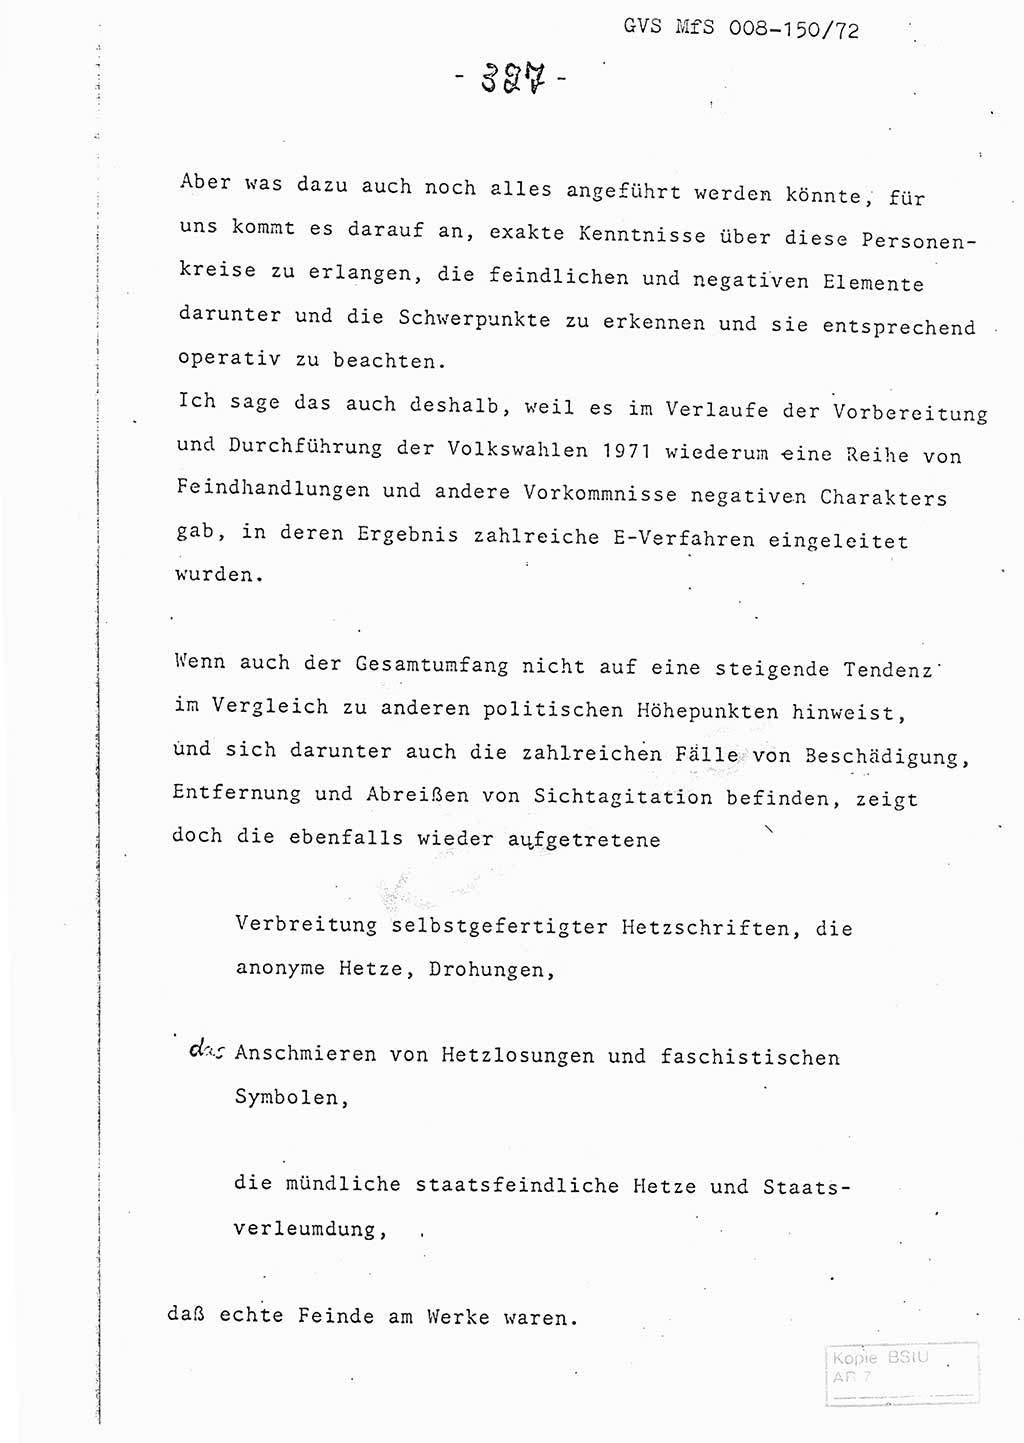 Referat (Entwurf) des Genossen Minister (Generaloberst Erich Mielke) auf der Dienstkonferenz 1972, Ministerium für Staatssicherheit (MfS) [Deutsche Demokratische Republik (DDR)], Der Minister, Geheime Verschlußsache (GVS) 008-150/72, Berlin 25.2.1972, Seite 327 (Ref. Entw. DK MfS DDR Min. GVS 008-150/72 1972, S. 327)